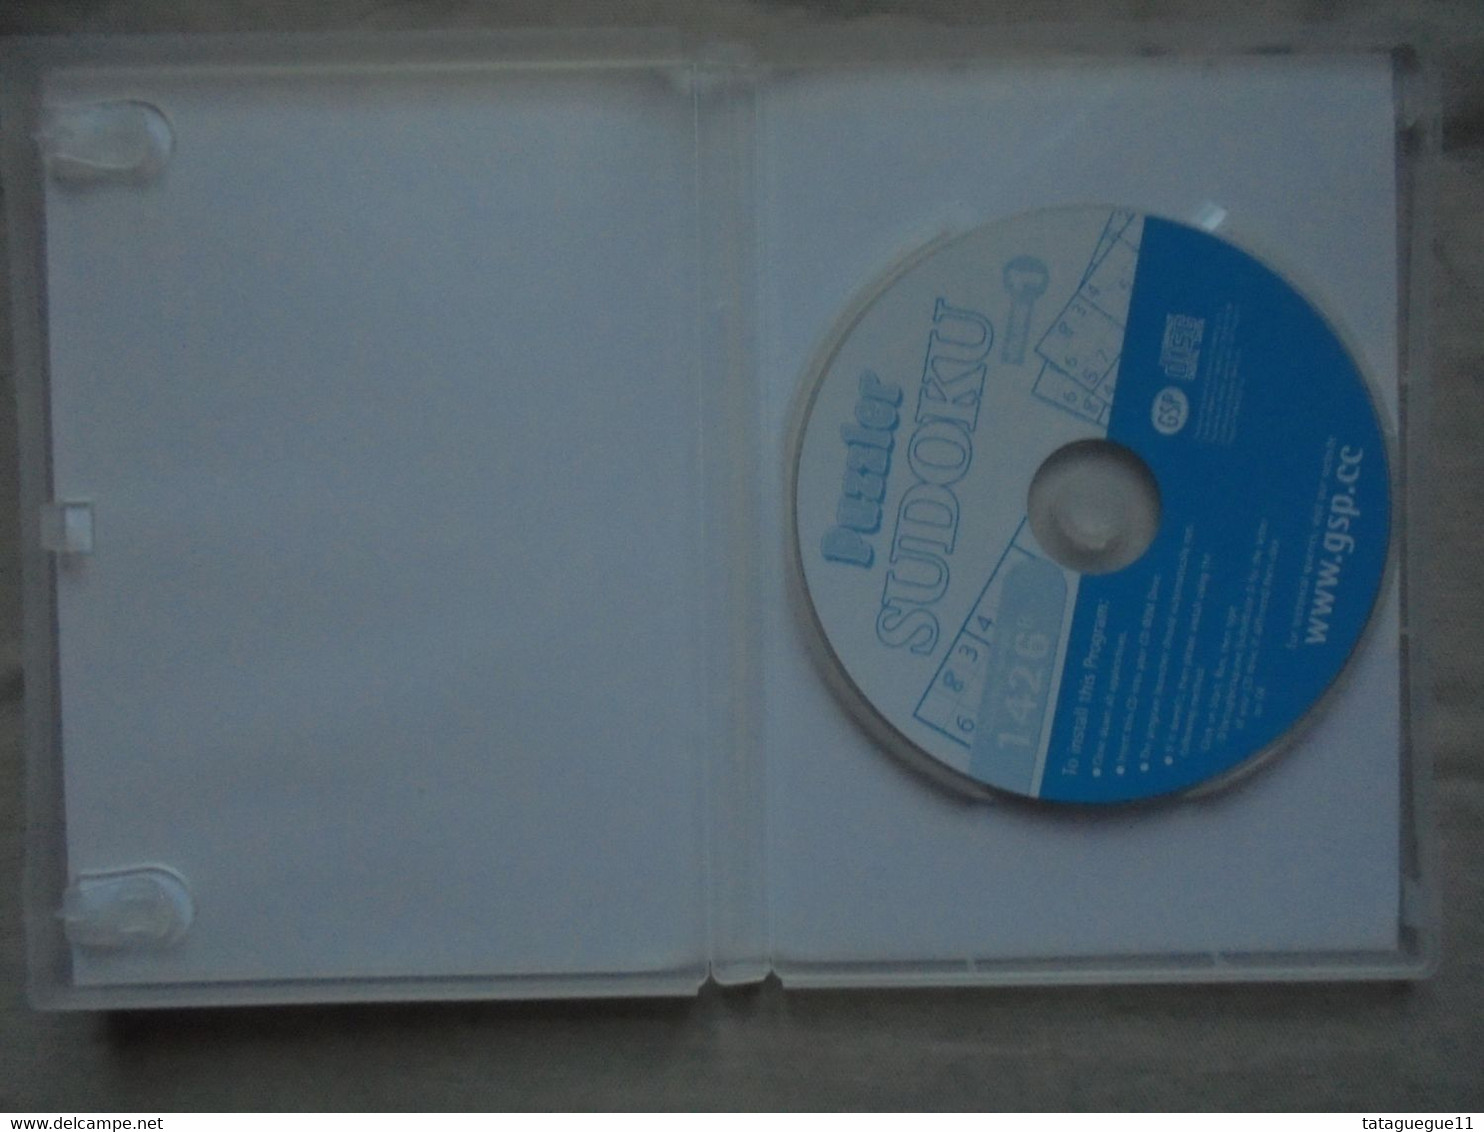 Vintage - Jeu PC CD - Puzzler Sudoku Voume 1 - 2005 - Giochi PC